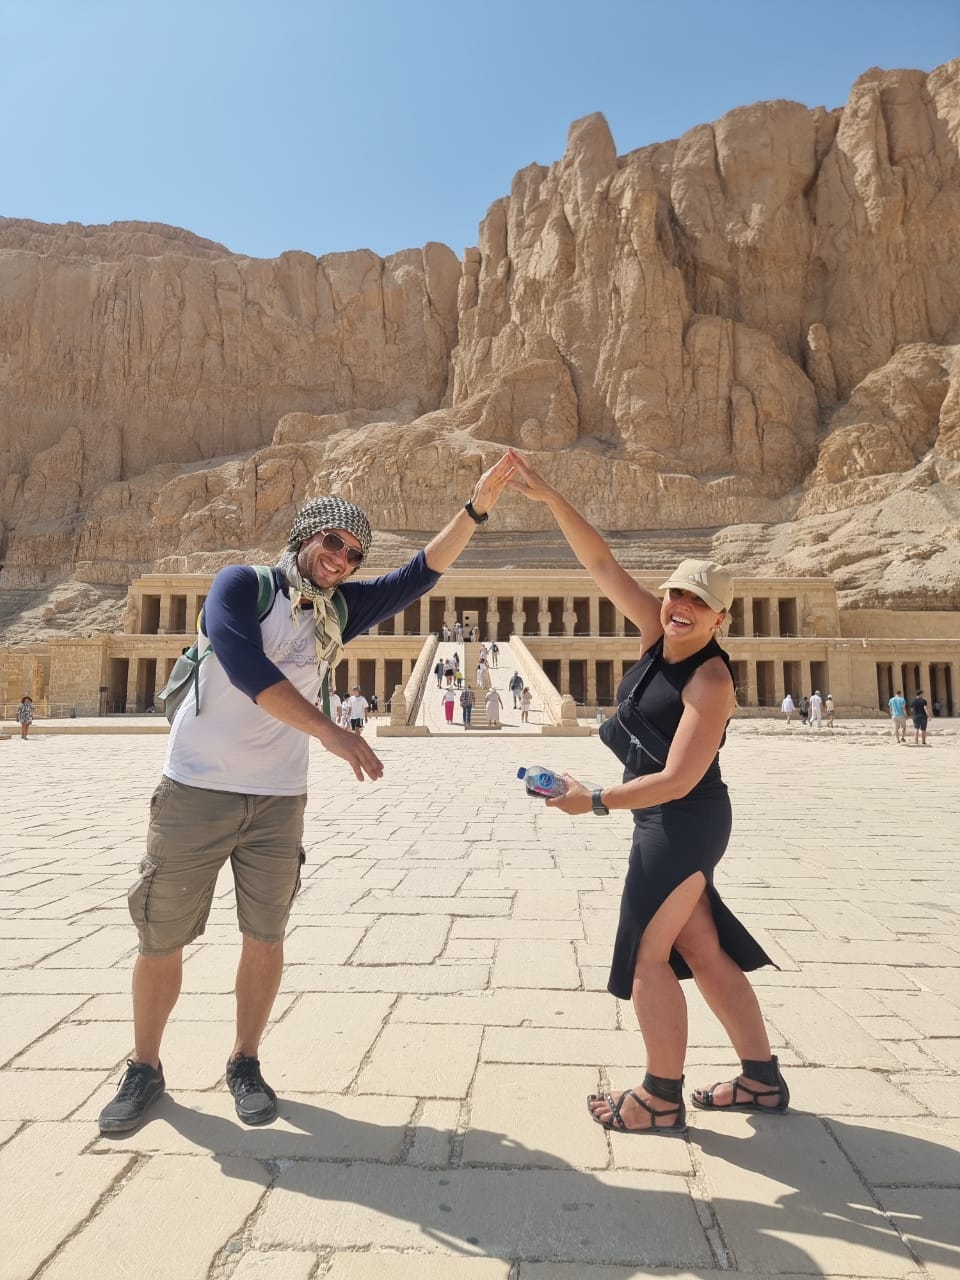 سعادة كبيرة بين السياح خلال زيارة معبد الملكة حتشبسوت